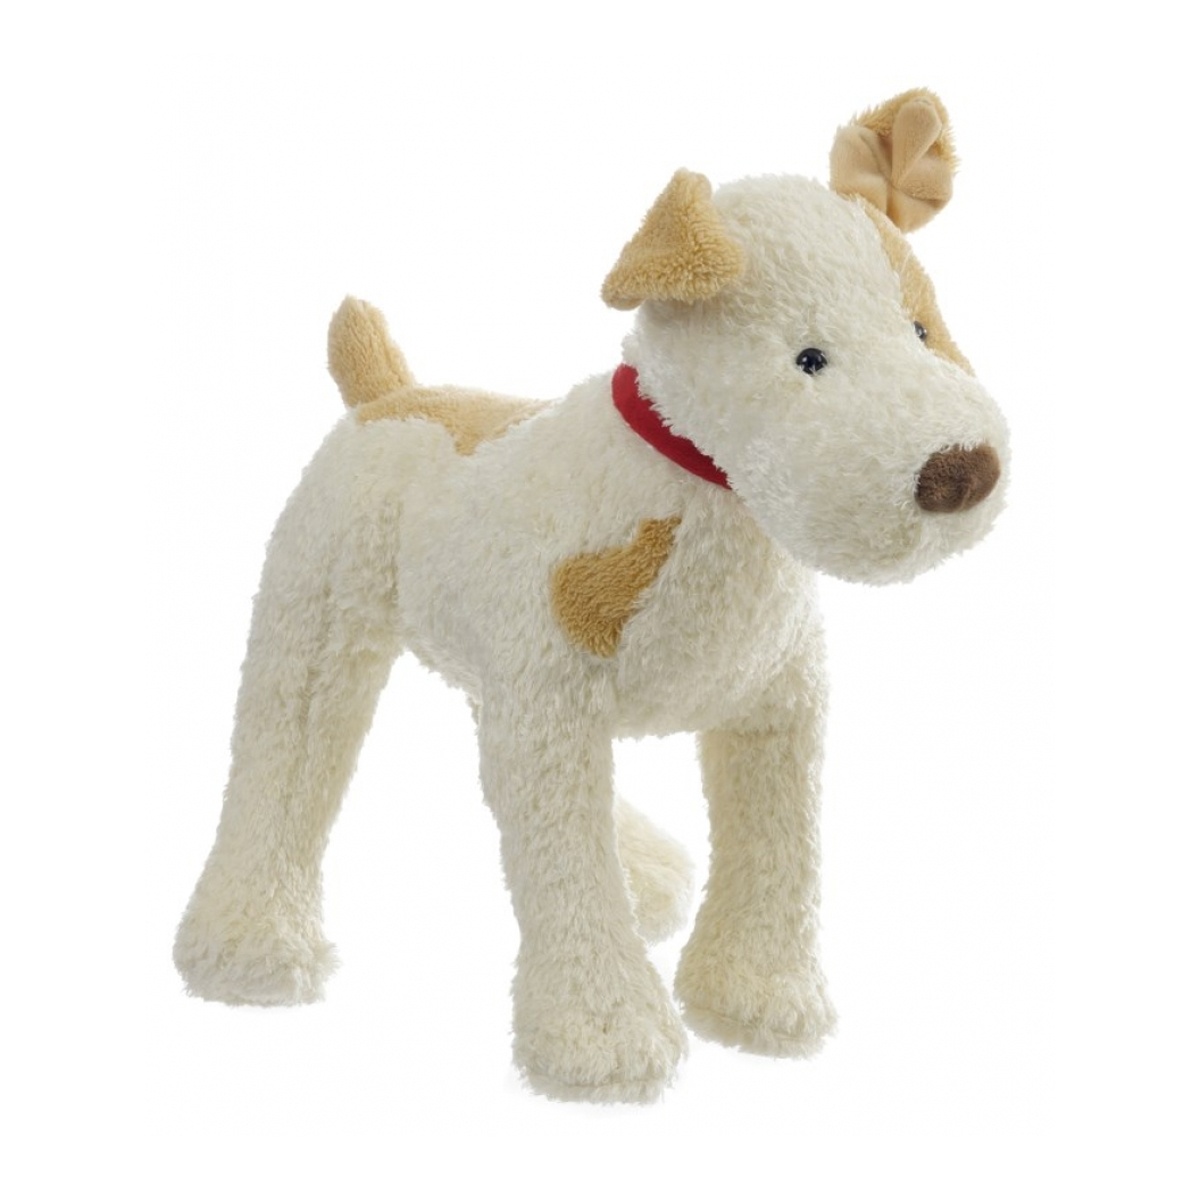 Egmont toys Hund Eliot stehend groß Kuscheltier 30 cm